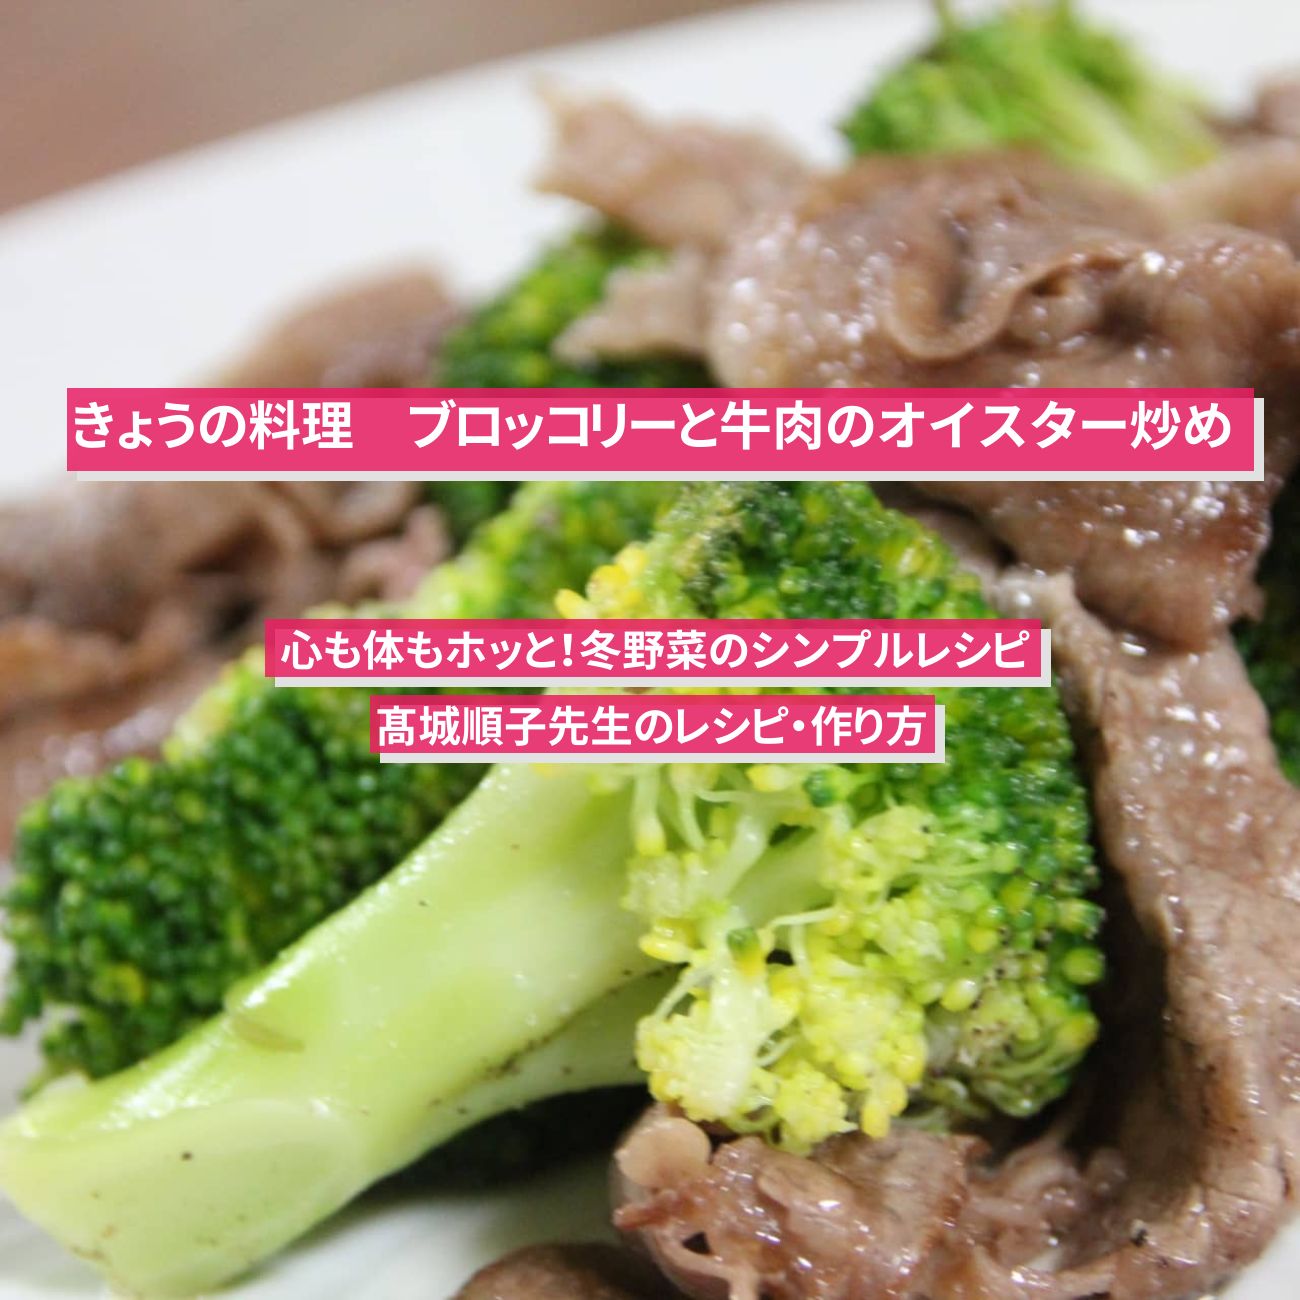 【きょうの料理】『ブロッコリーと牛肉のオイスター炒め』髙城順子先生のレシピ・作り方